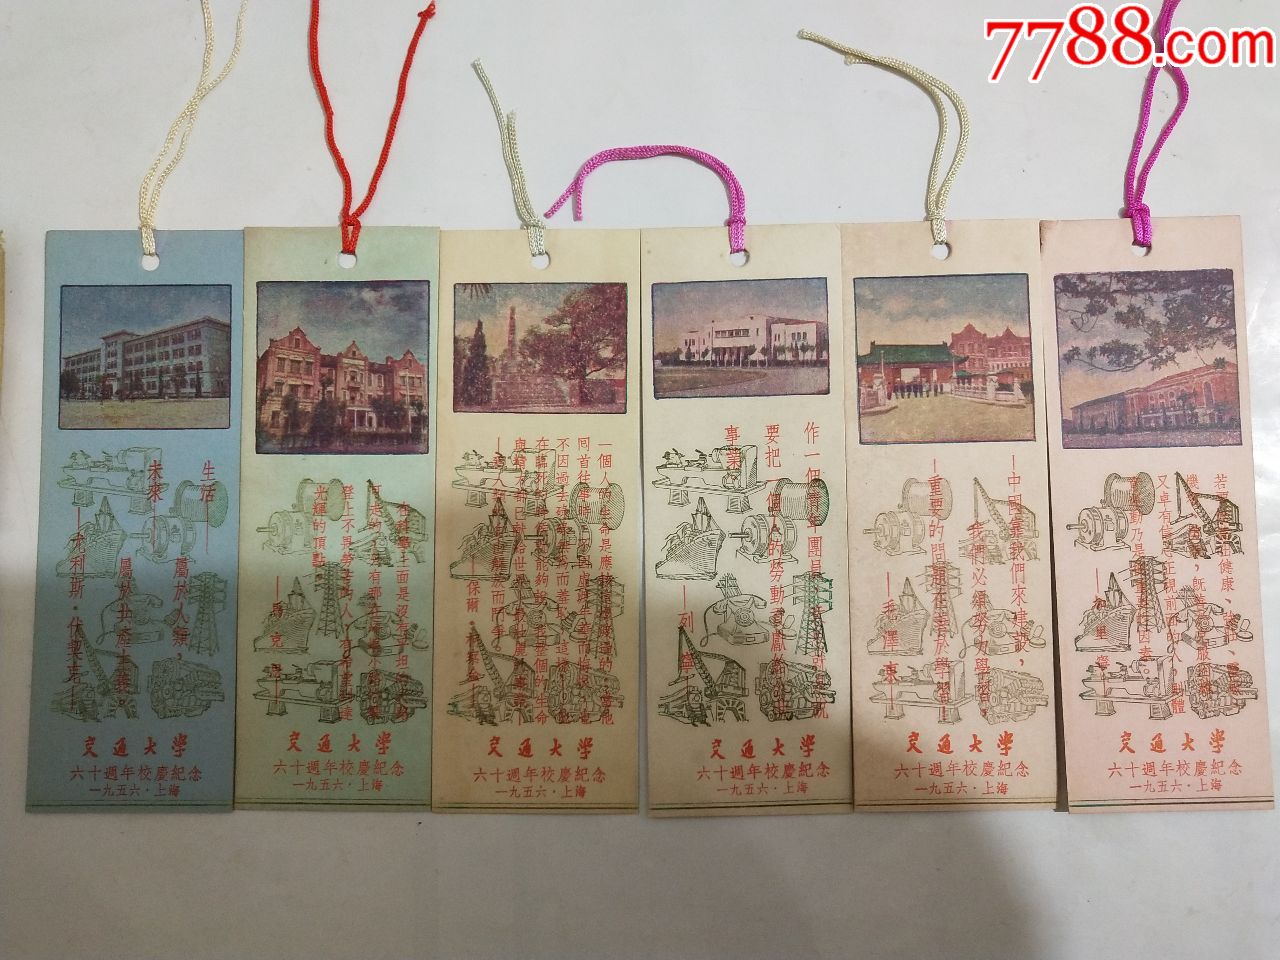 1956年上海交通大学六十周年校庆纪念书签6枚